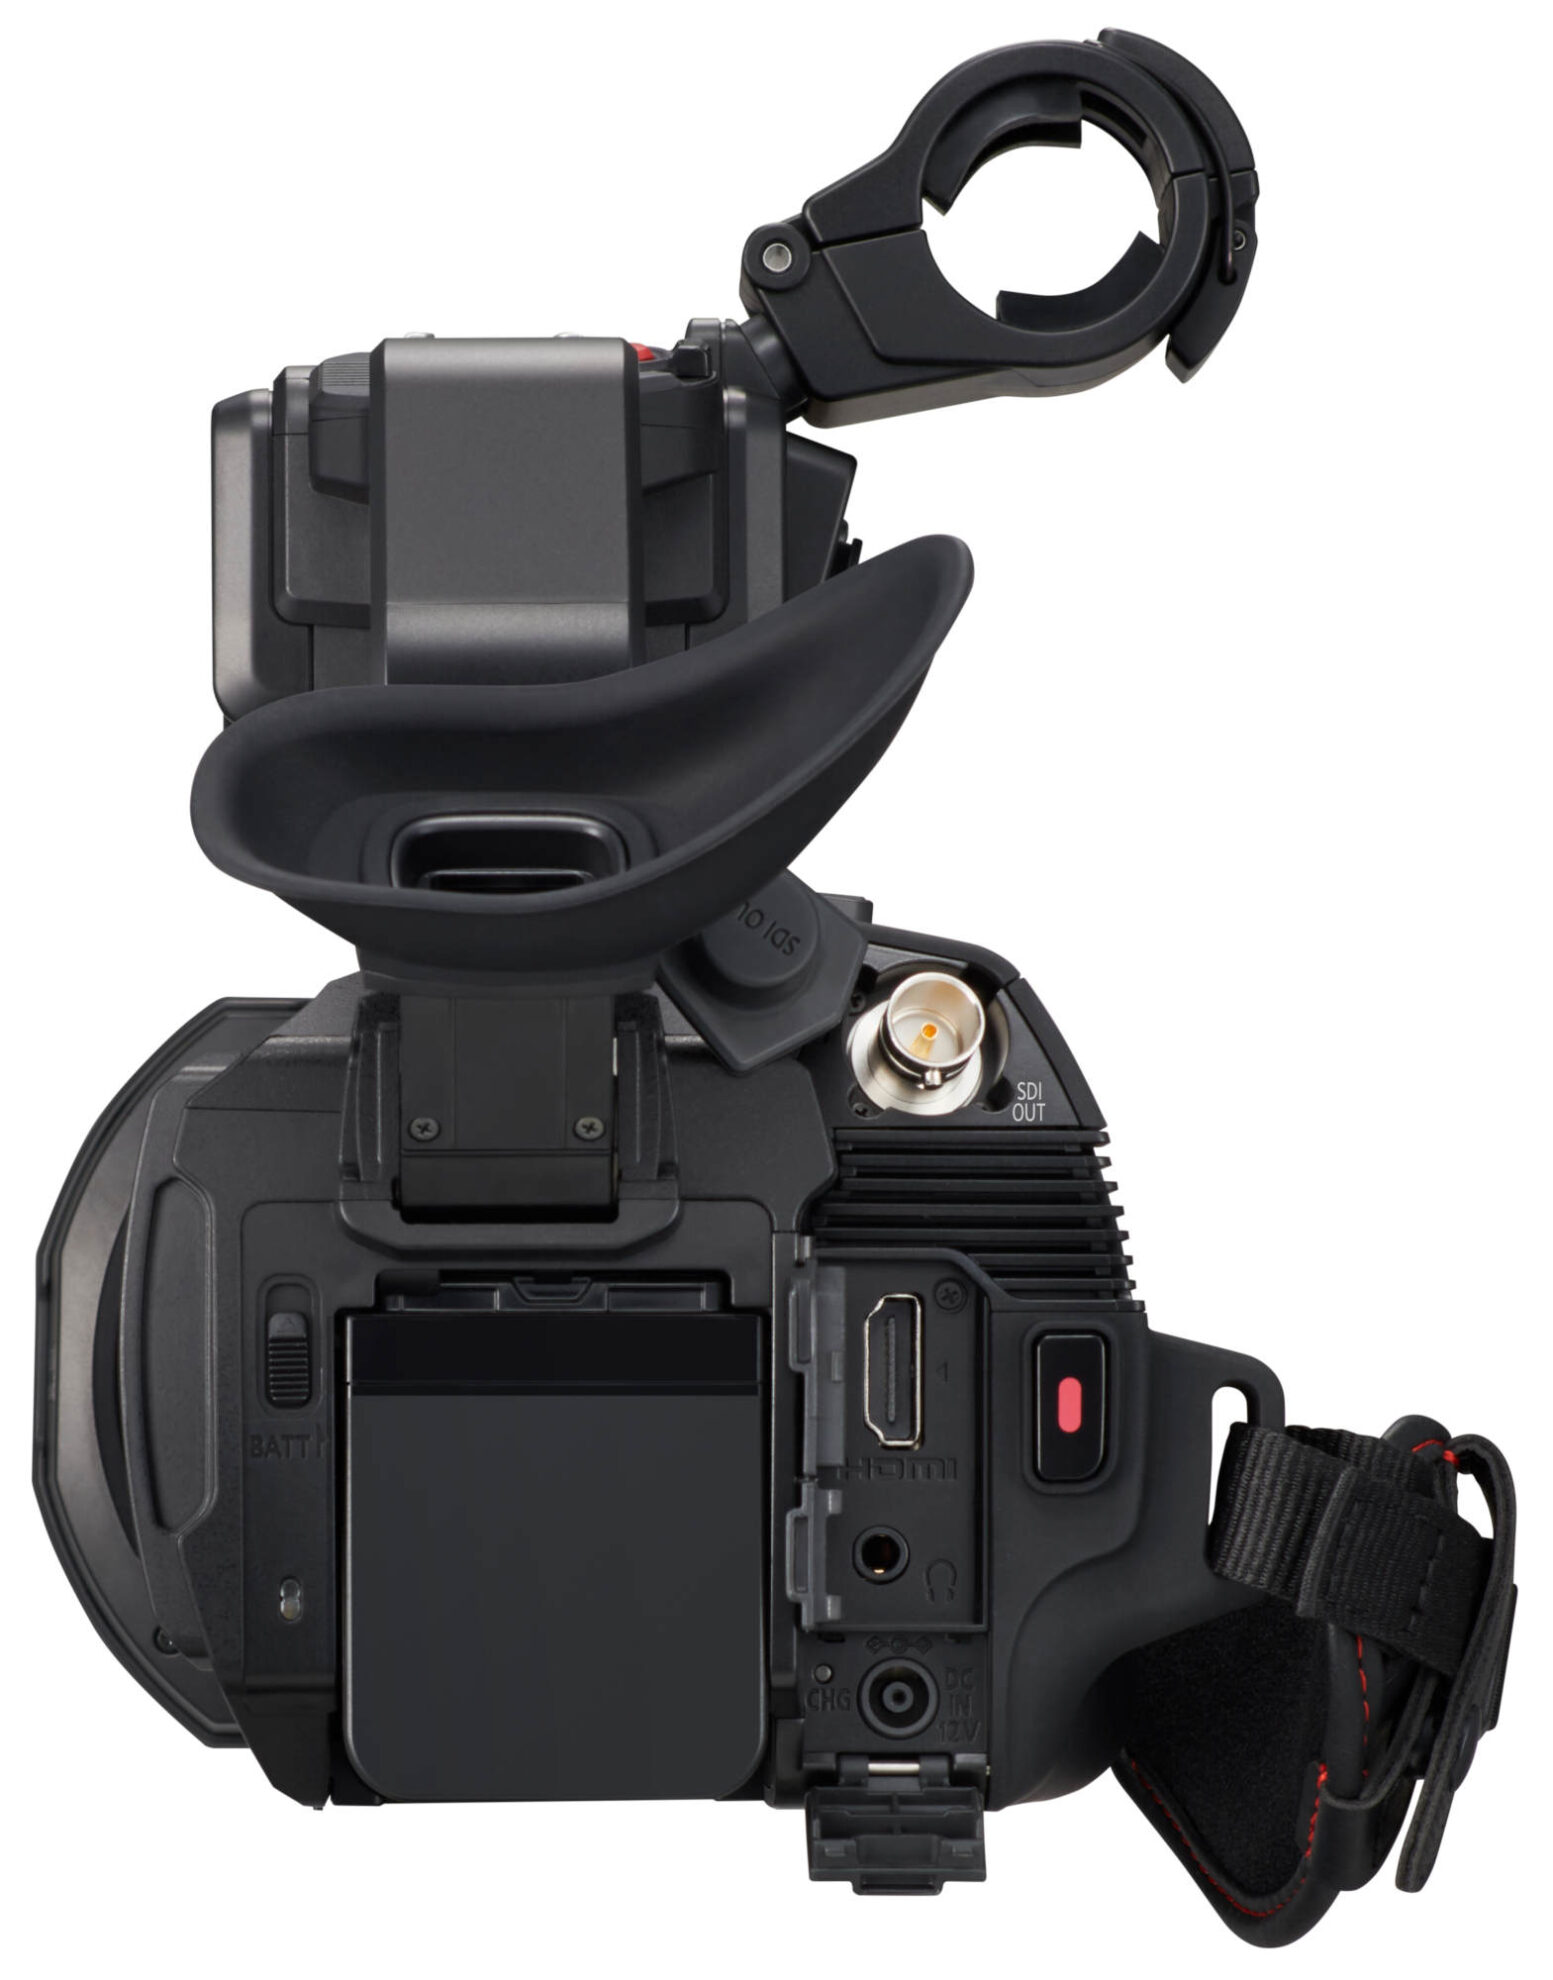 Panasonic HC-X2000E videokamera